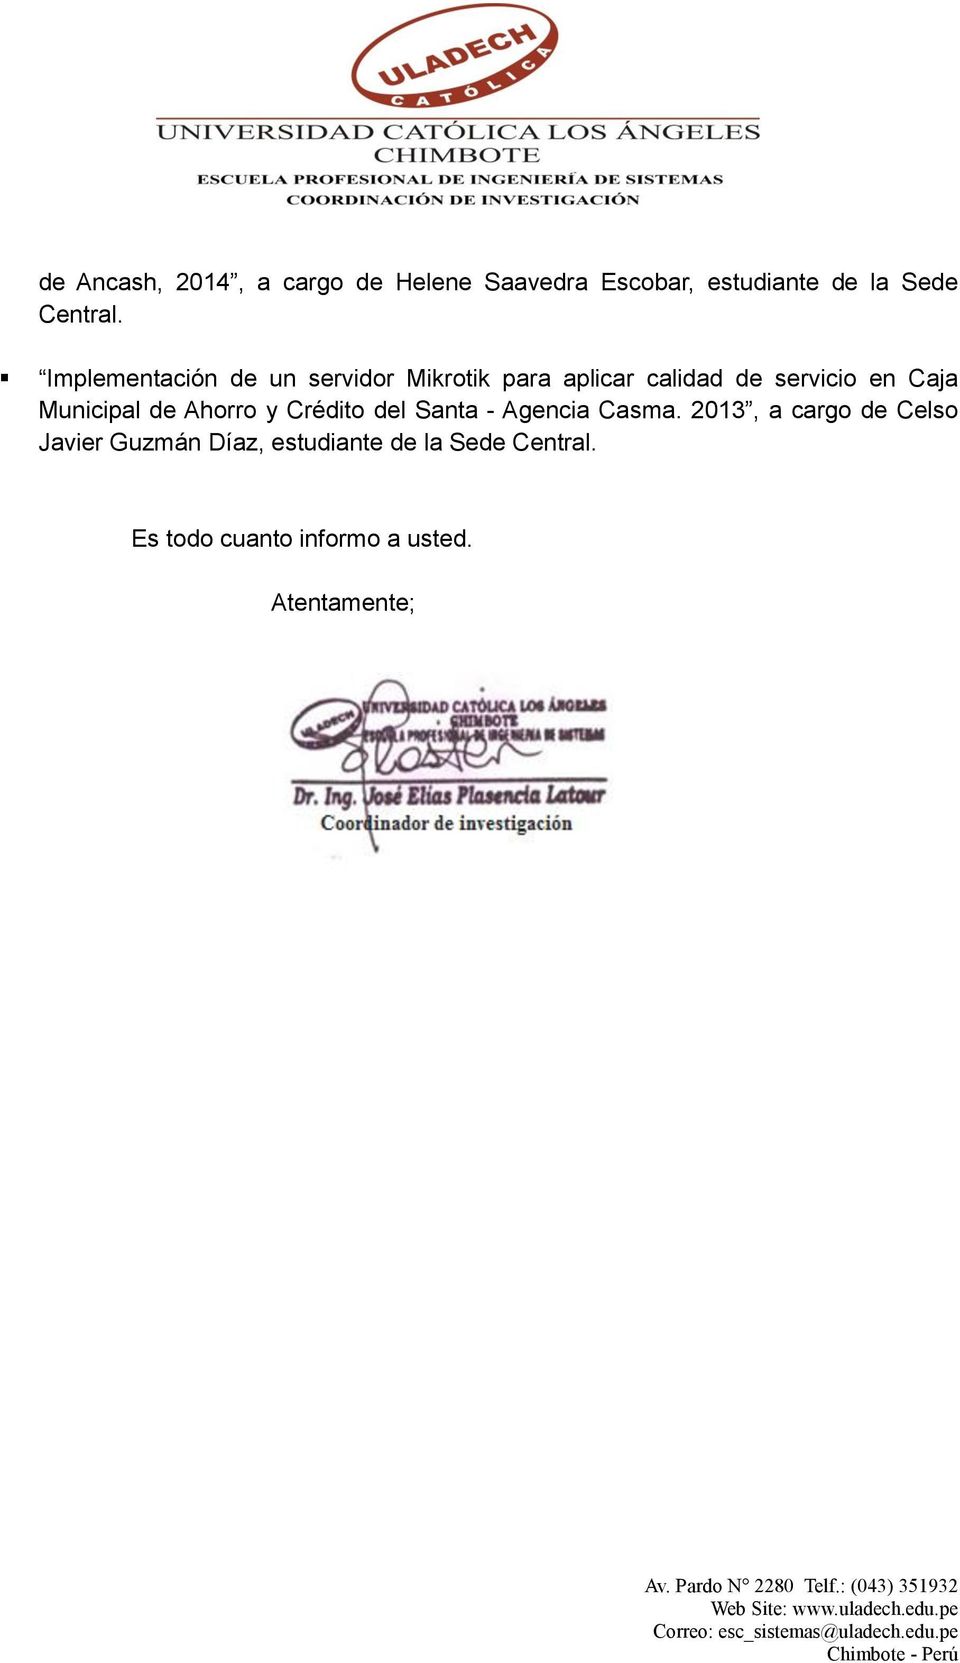 Municipal de Ahorro y Crédito del Santa - Agencia Casma.